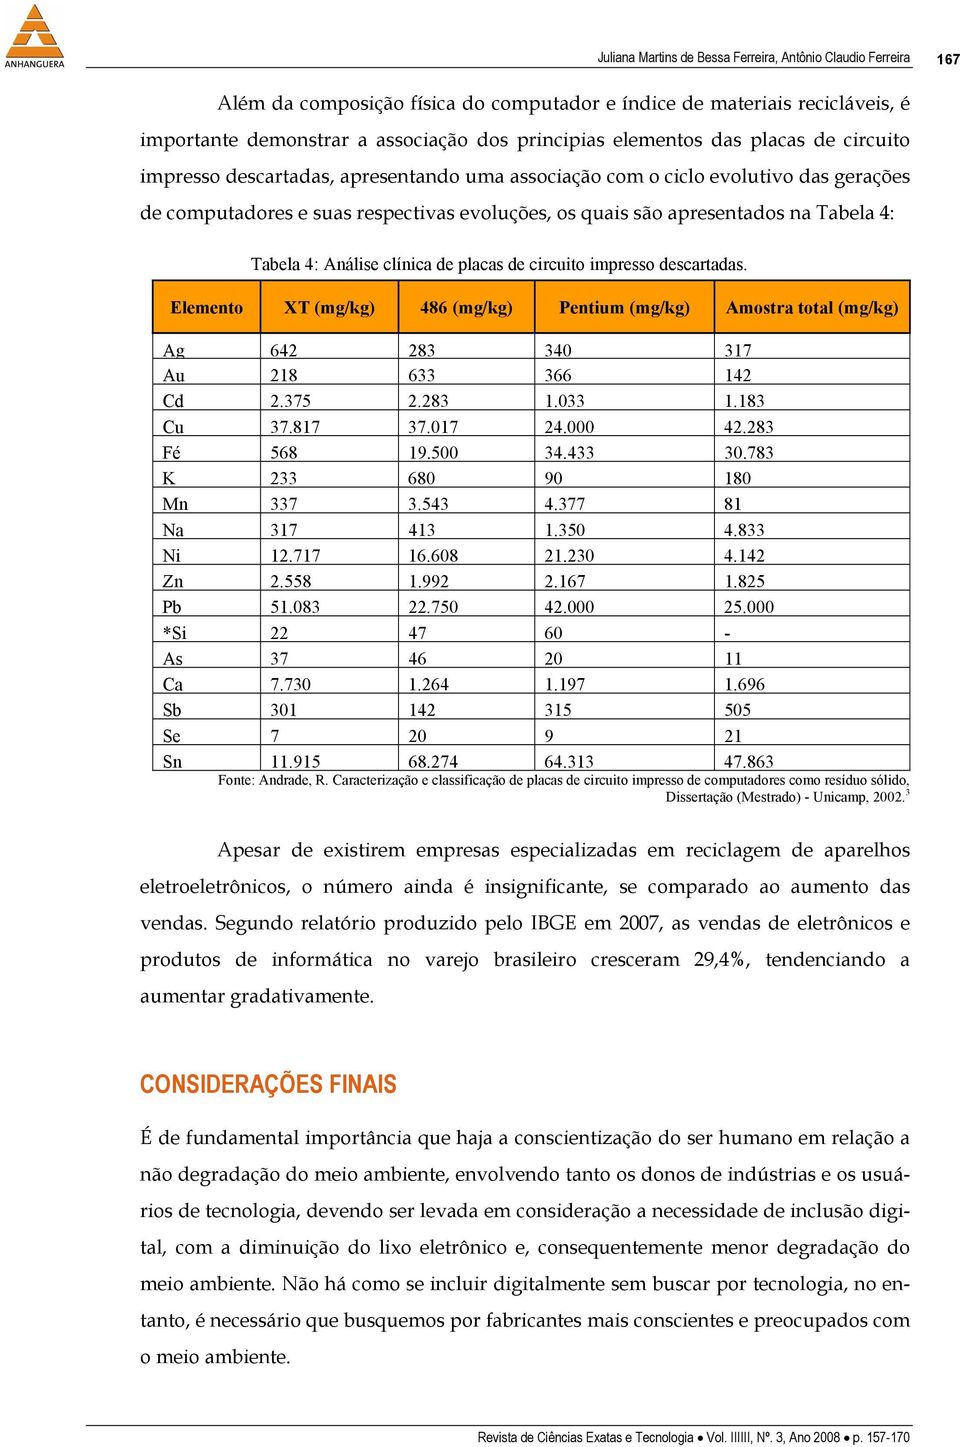 4: Tabela 4: Análise clínica de placas de circuito impresso descartadas. Elemento XT (mg/kg) 486 (mg/kg) Pentium (mg/kg) Amostra total (mg/kg) Ag 642 283 340 317 Au 218 633 366 142 Cd 2.375 2.283 1.